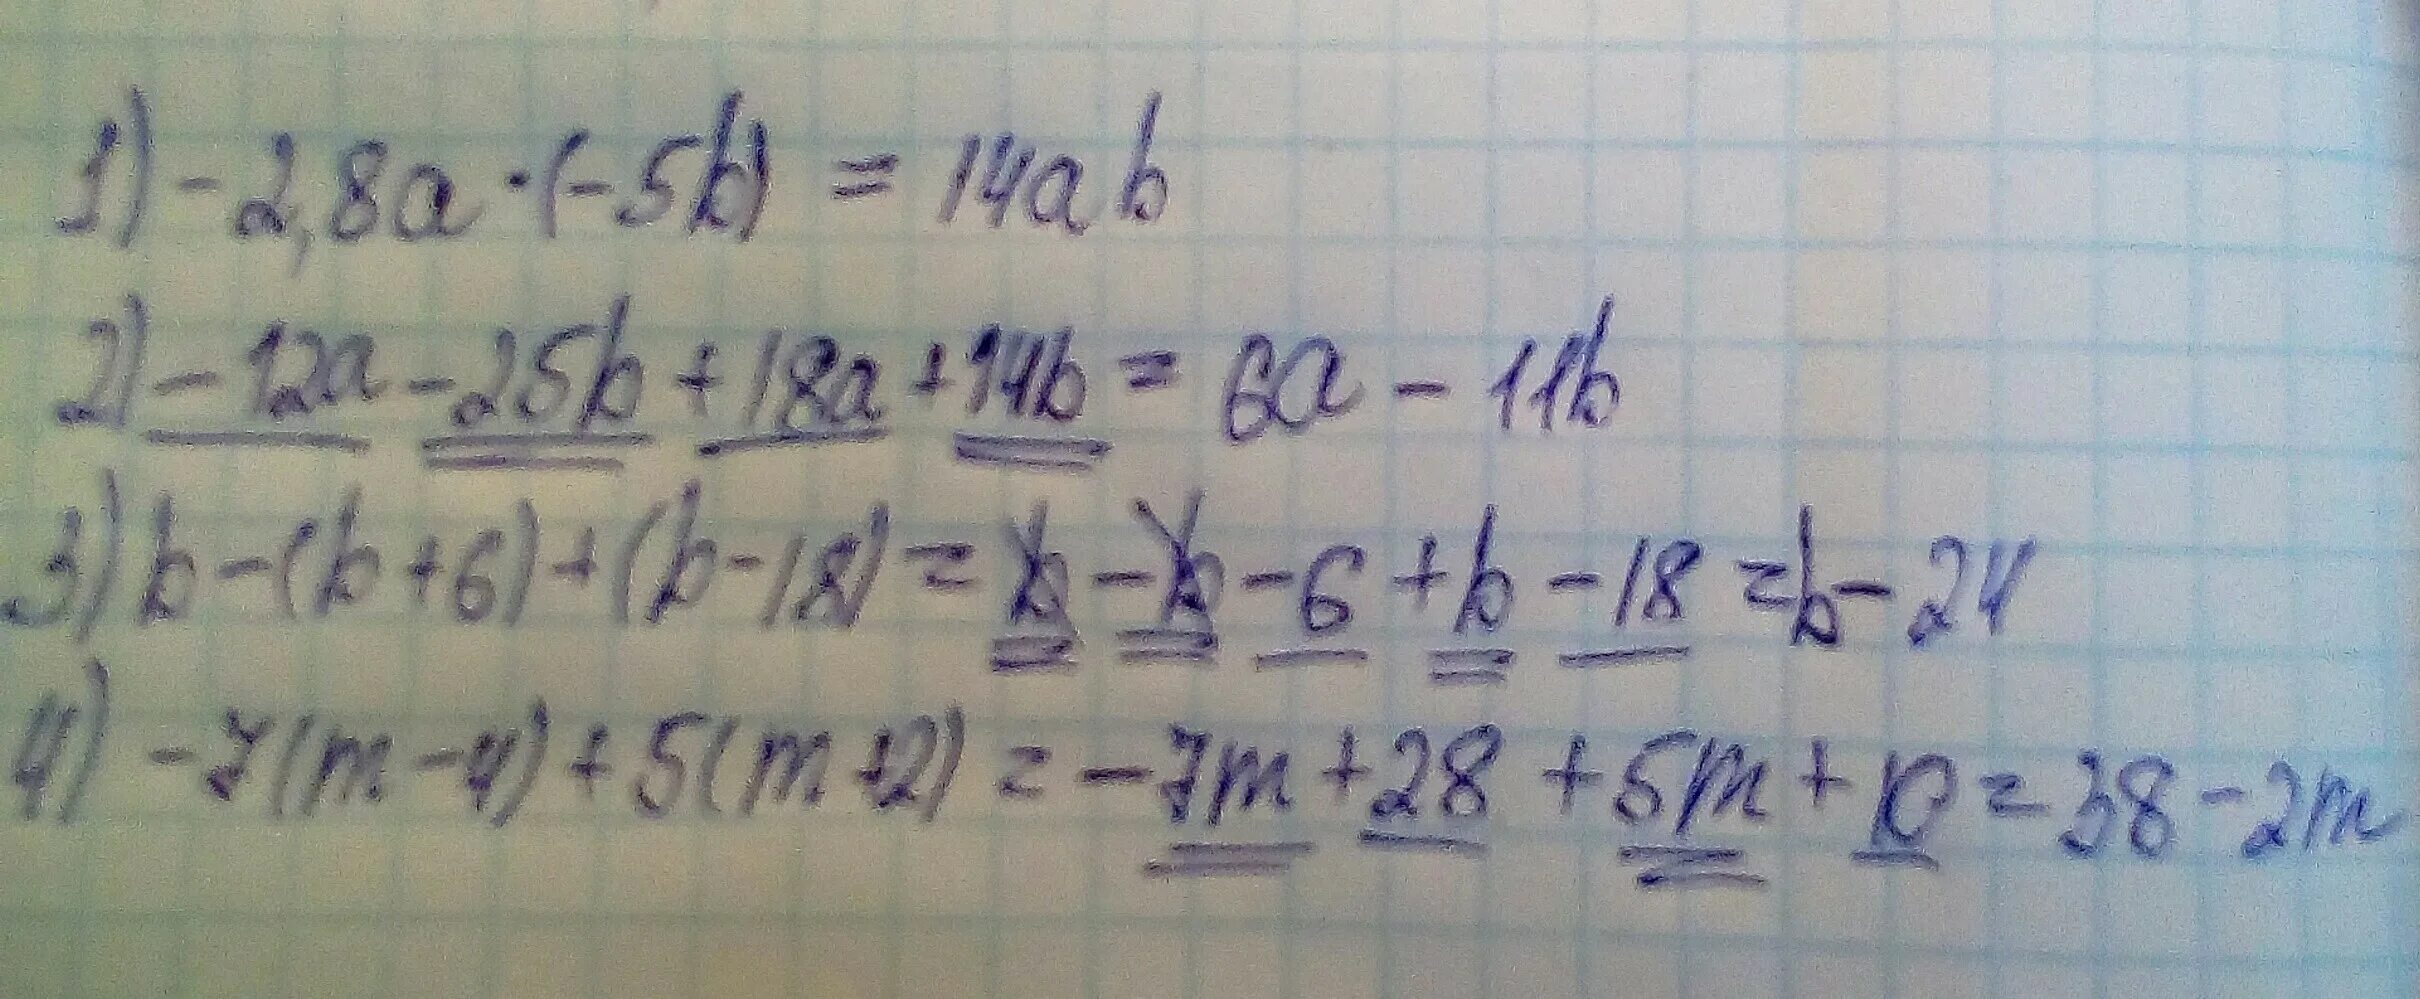 Упростить выражение 1 18 a 3. -12a-25b+18a+14b. A B A B упростить. 4b12. С5-25b.